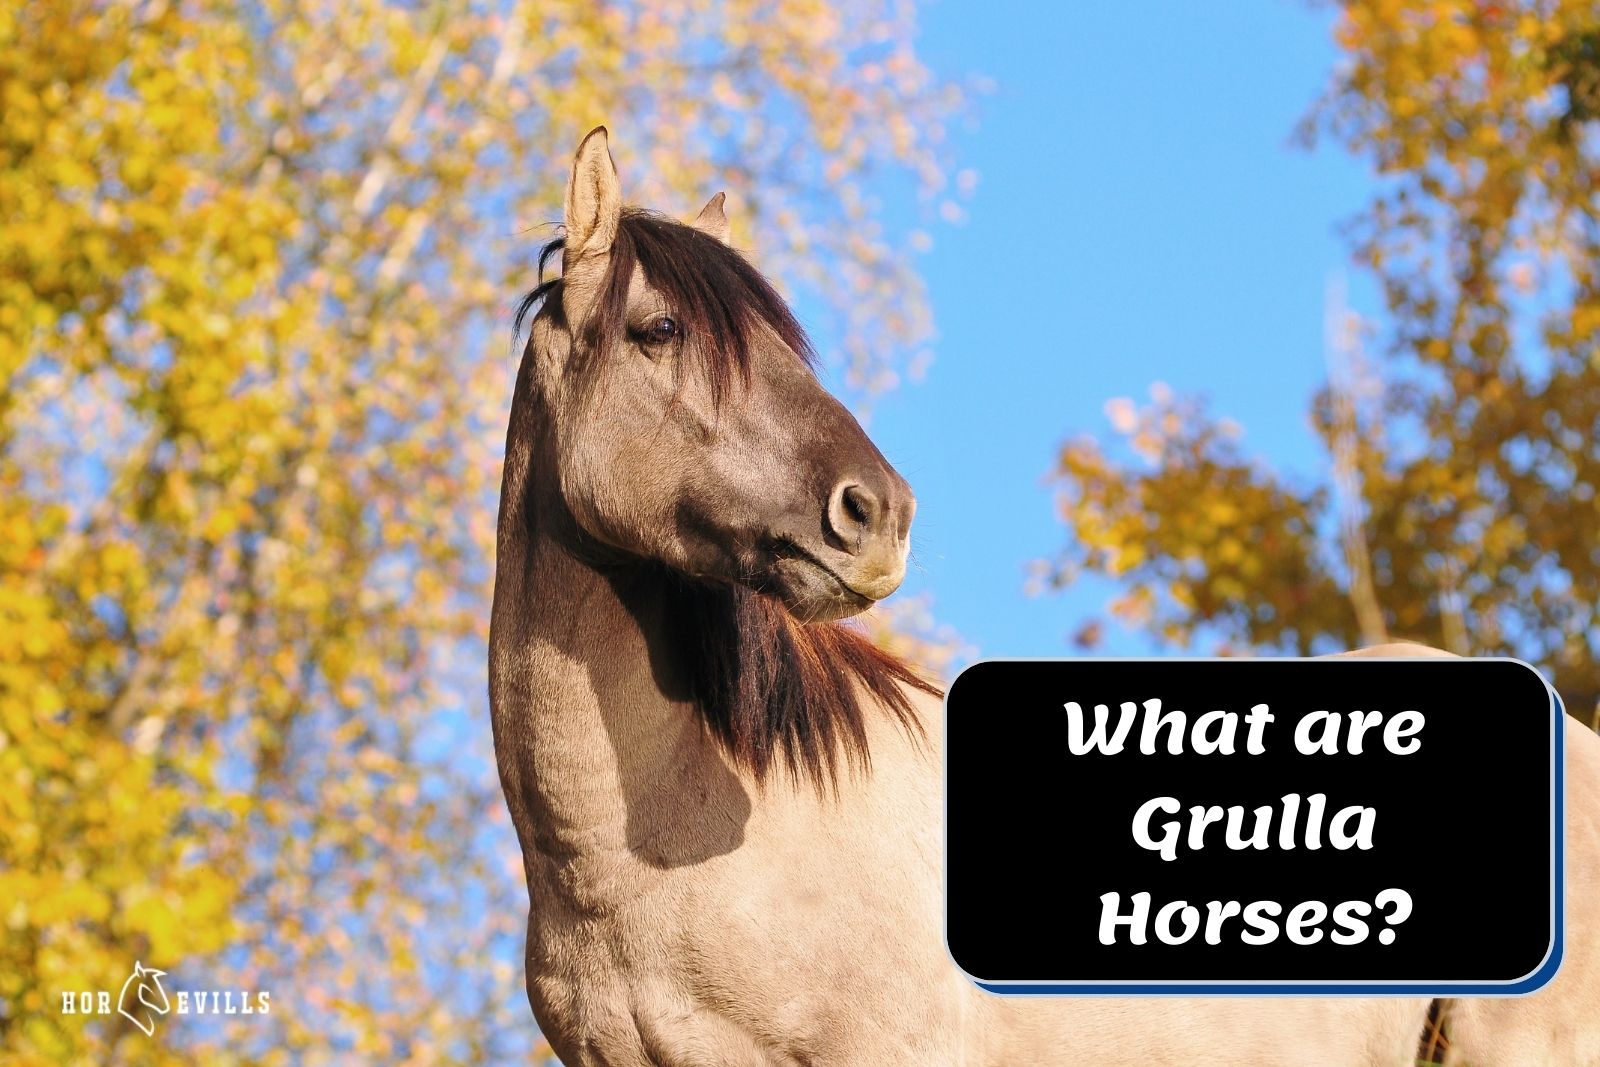 a grulla horse